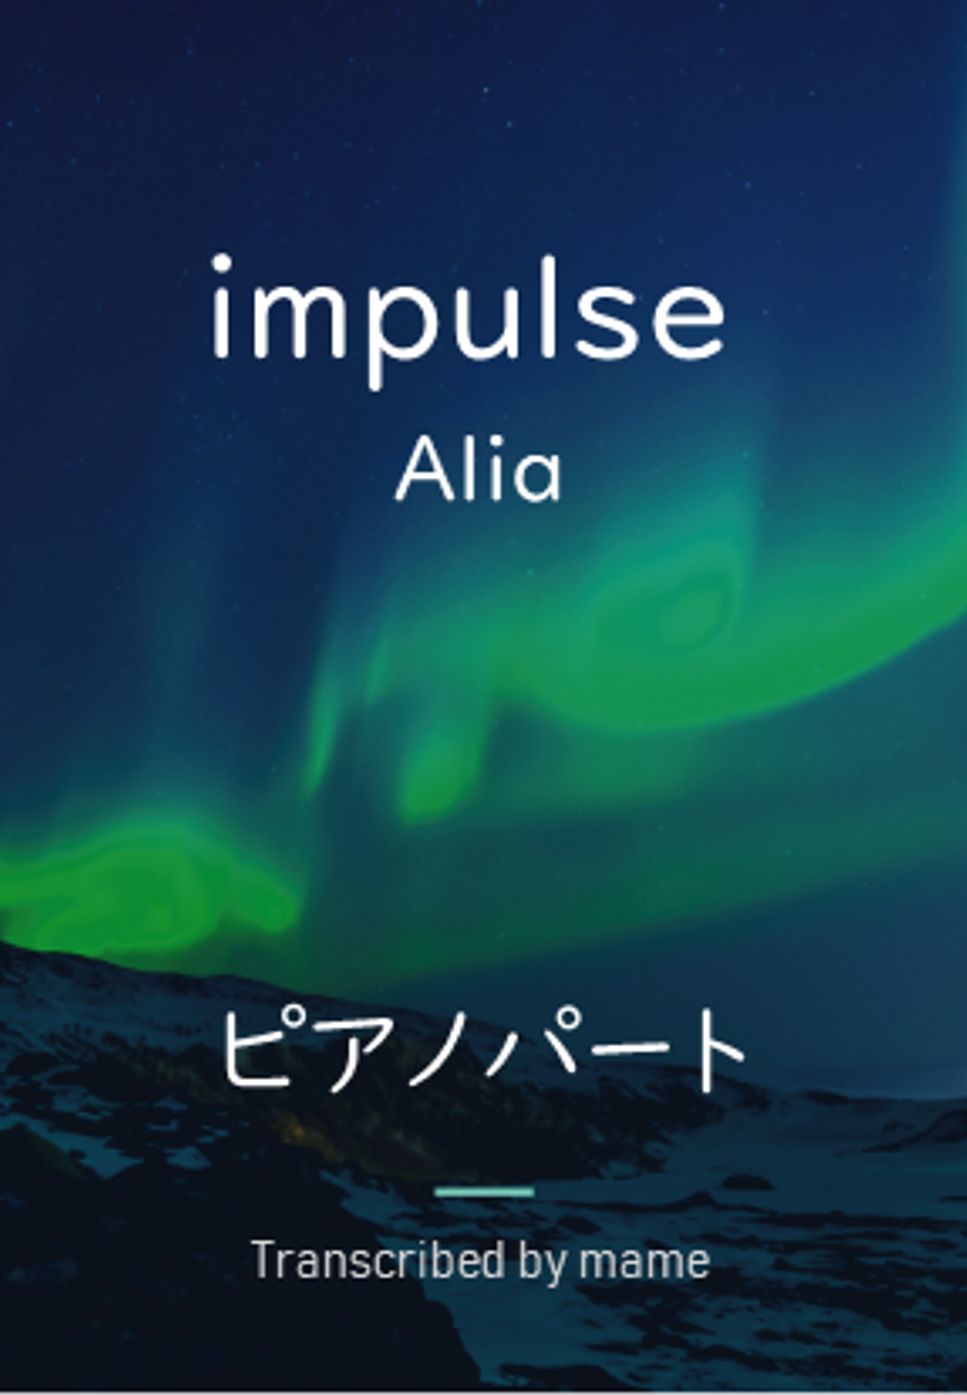 Alia - impulse (ピアノパート) by mame